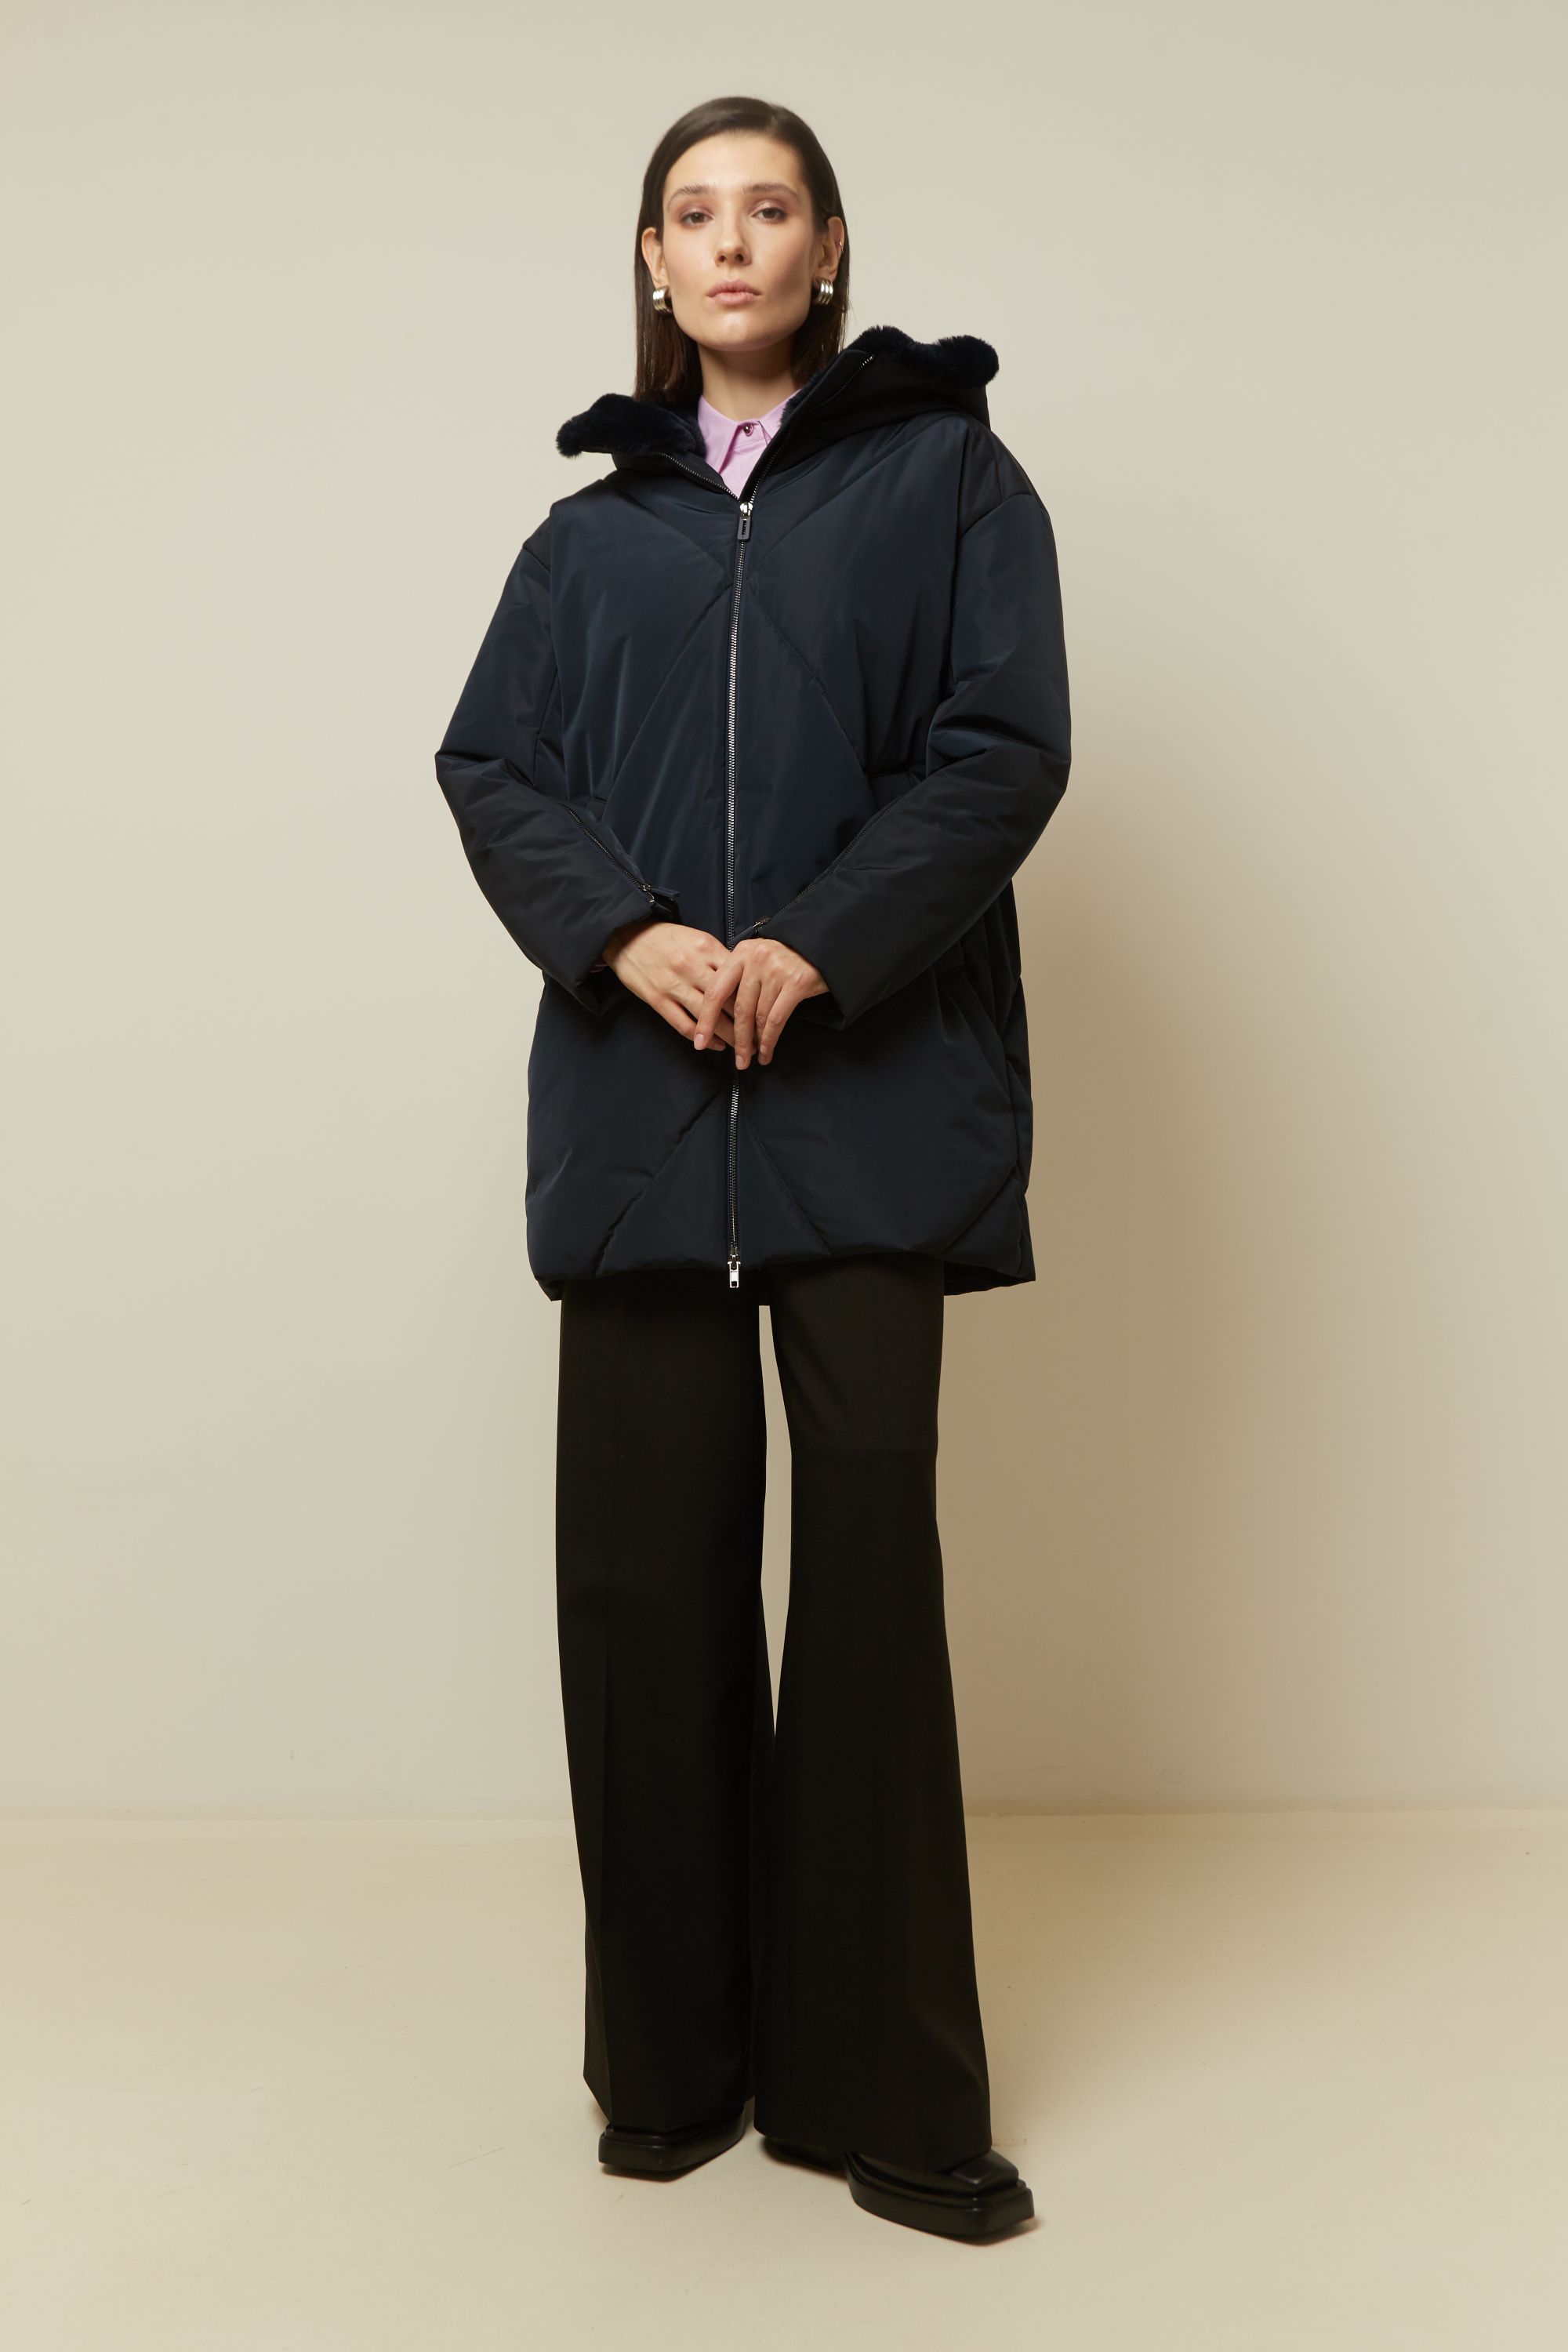 Пальто женское плащевое утепленное 5S-13035-1. Фото 2.